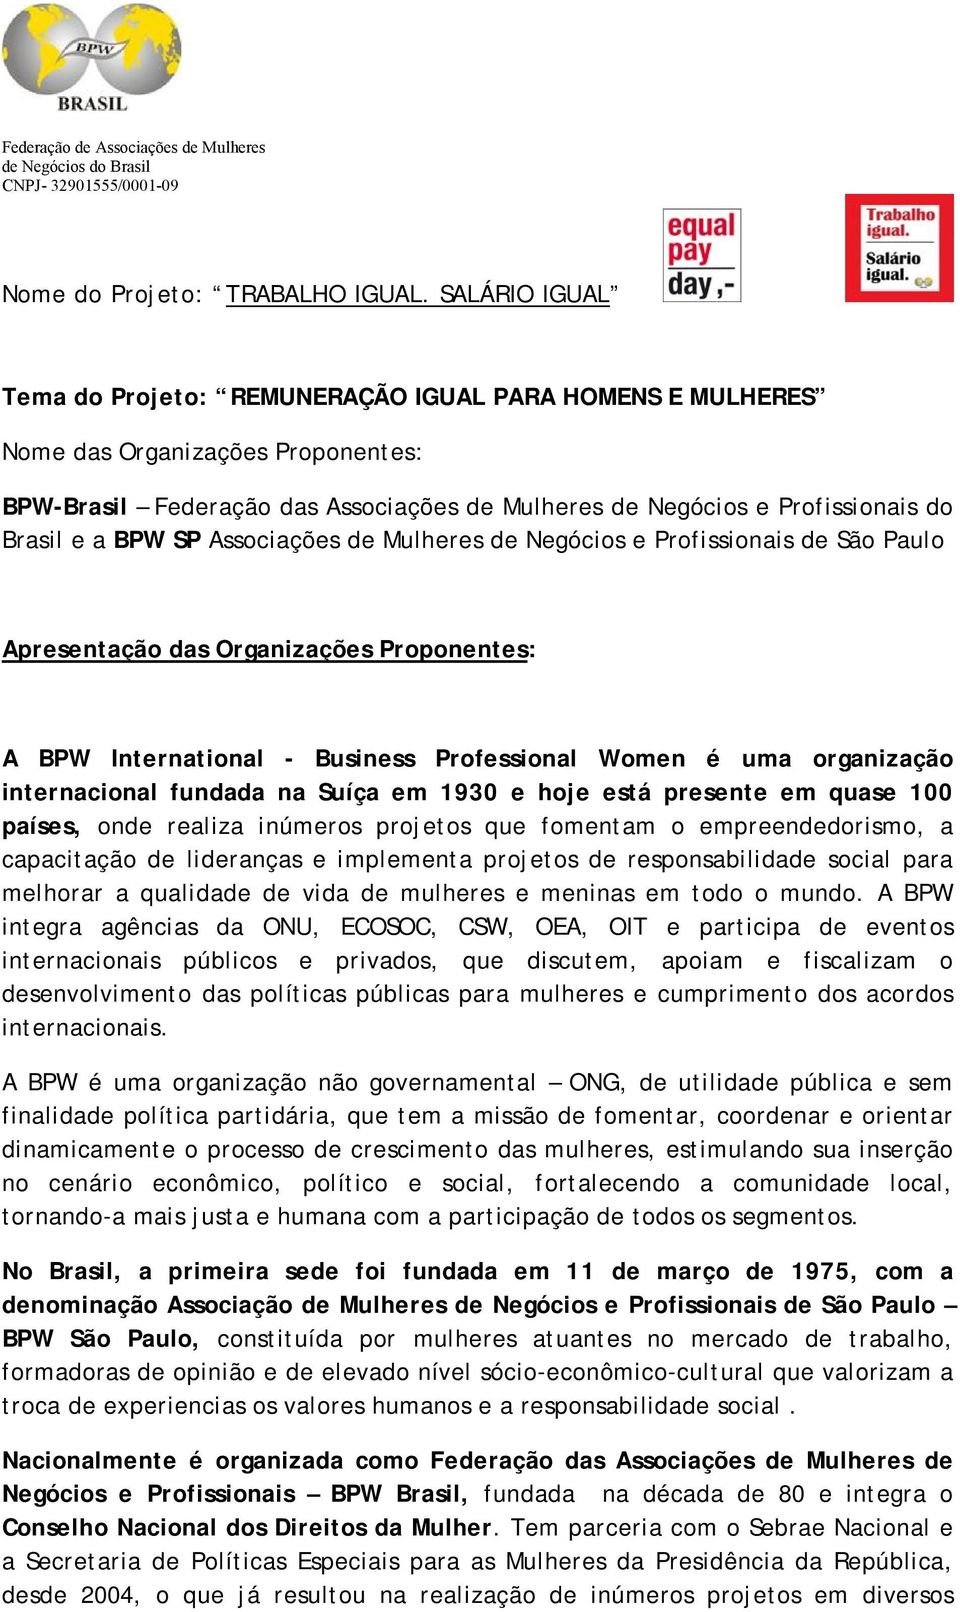 BPW SP Associações de Mulheres de Negócios e Profissionais de São Paulo Apresentação das Organizações Proponentes: A BPW International - Business Professional Women é uma organização internacional